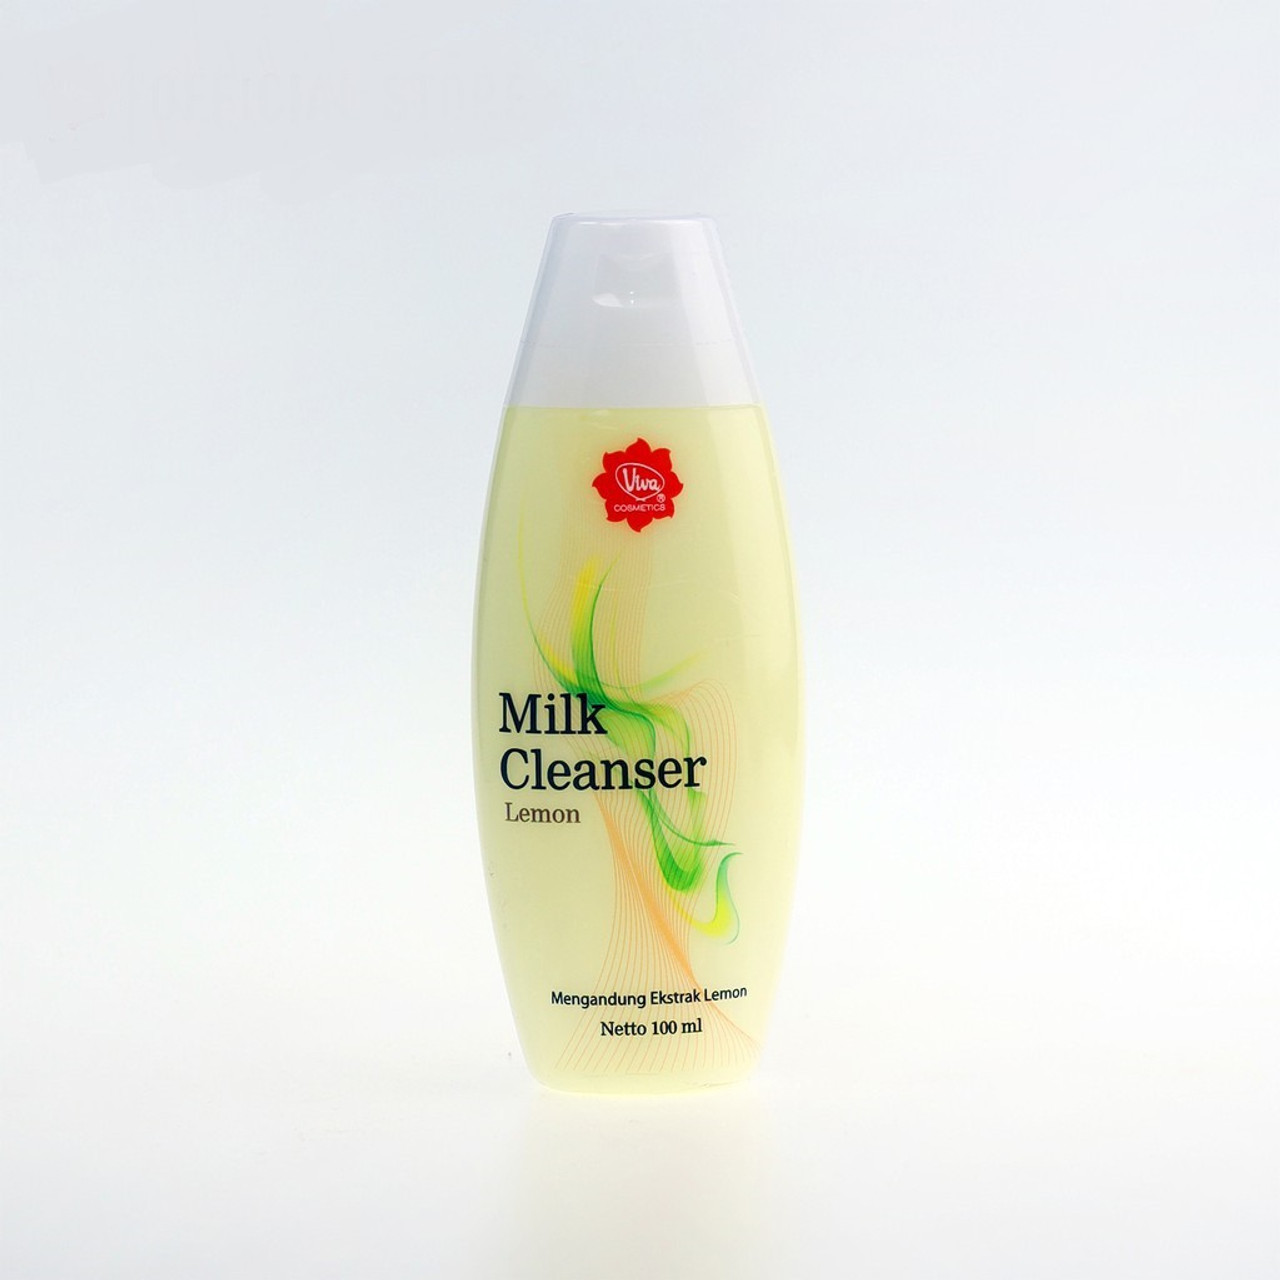 Viva Milk Cleanser Lemon, 100ml